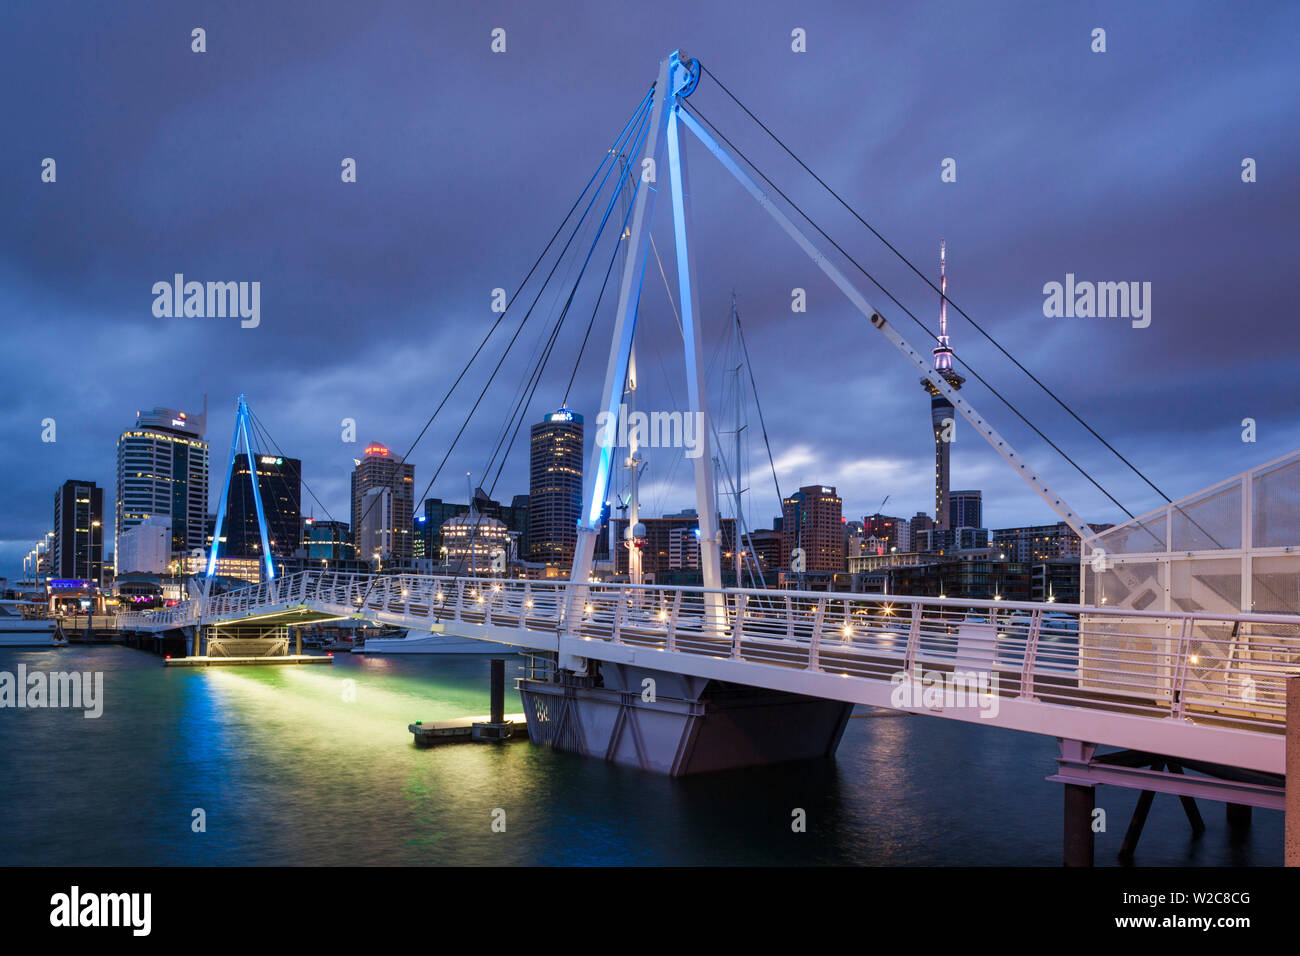 Nouvelle Zélande, île du nord, Auckland, Viaduct Harbour, passerelle, à l'aube Banque D'Images